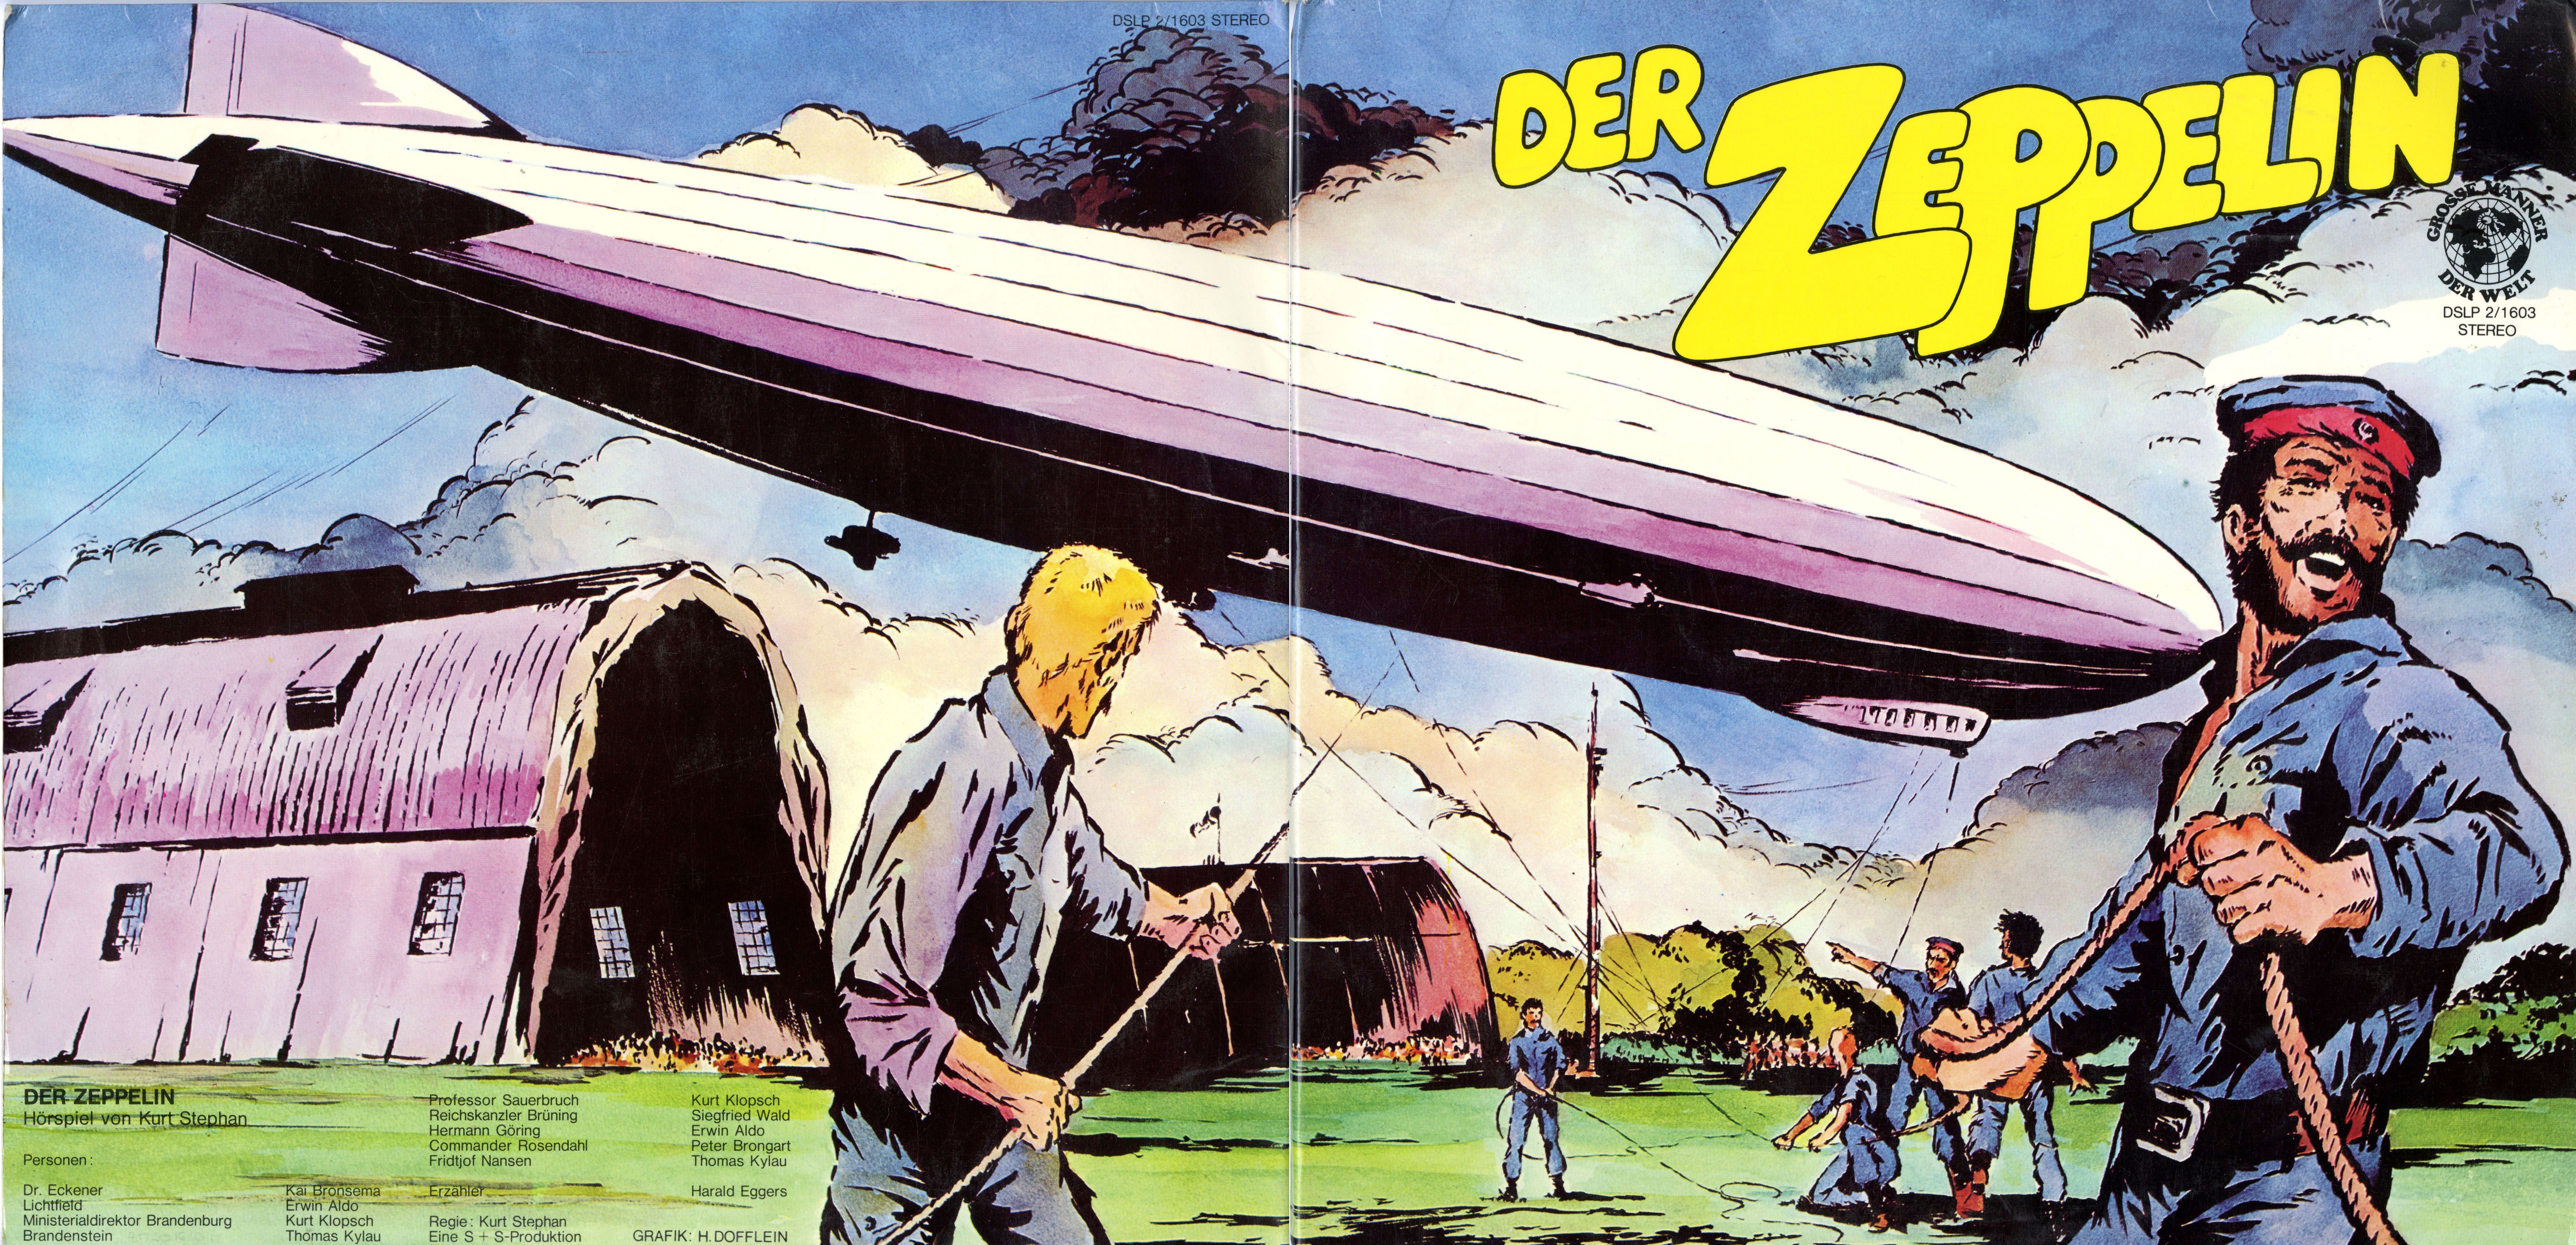 Schallplatten: Hörspiel "Der Zeppelin" von Kurt Stephan auf 2 LPs (Zeppelin Museum Friedrichshafen GmbH CC BY-NC-SA)